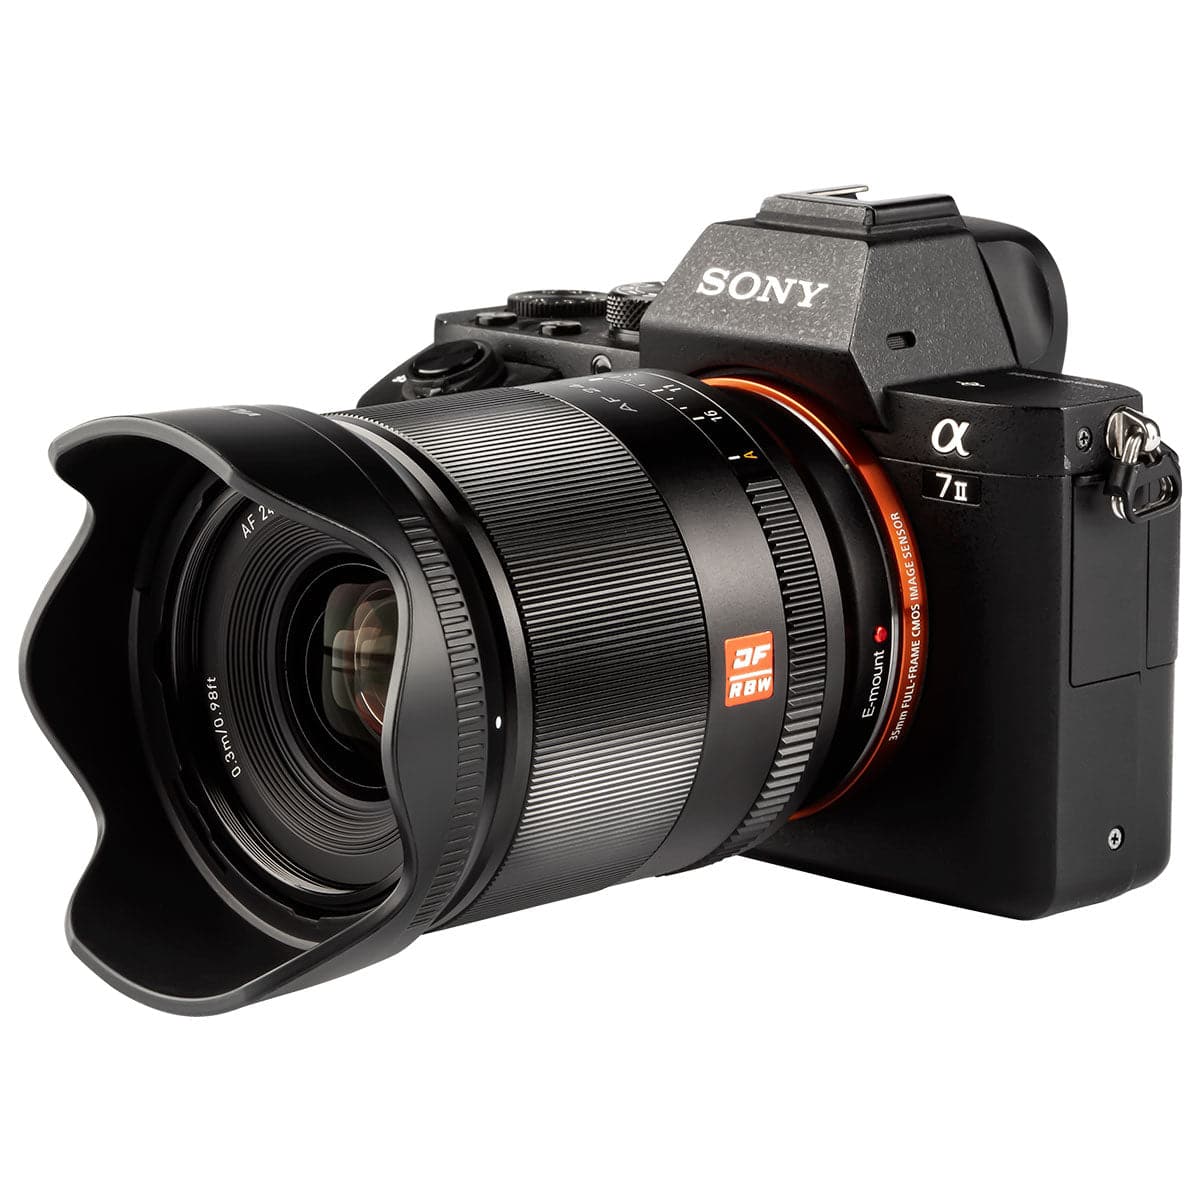 Viltrox AF 24mm F1.8 Full Frame Lens For Sony E-Mount